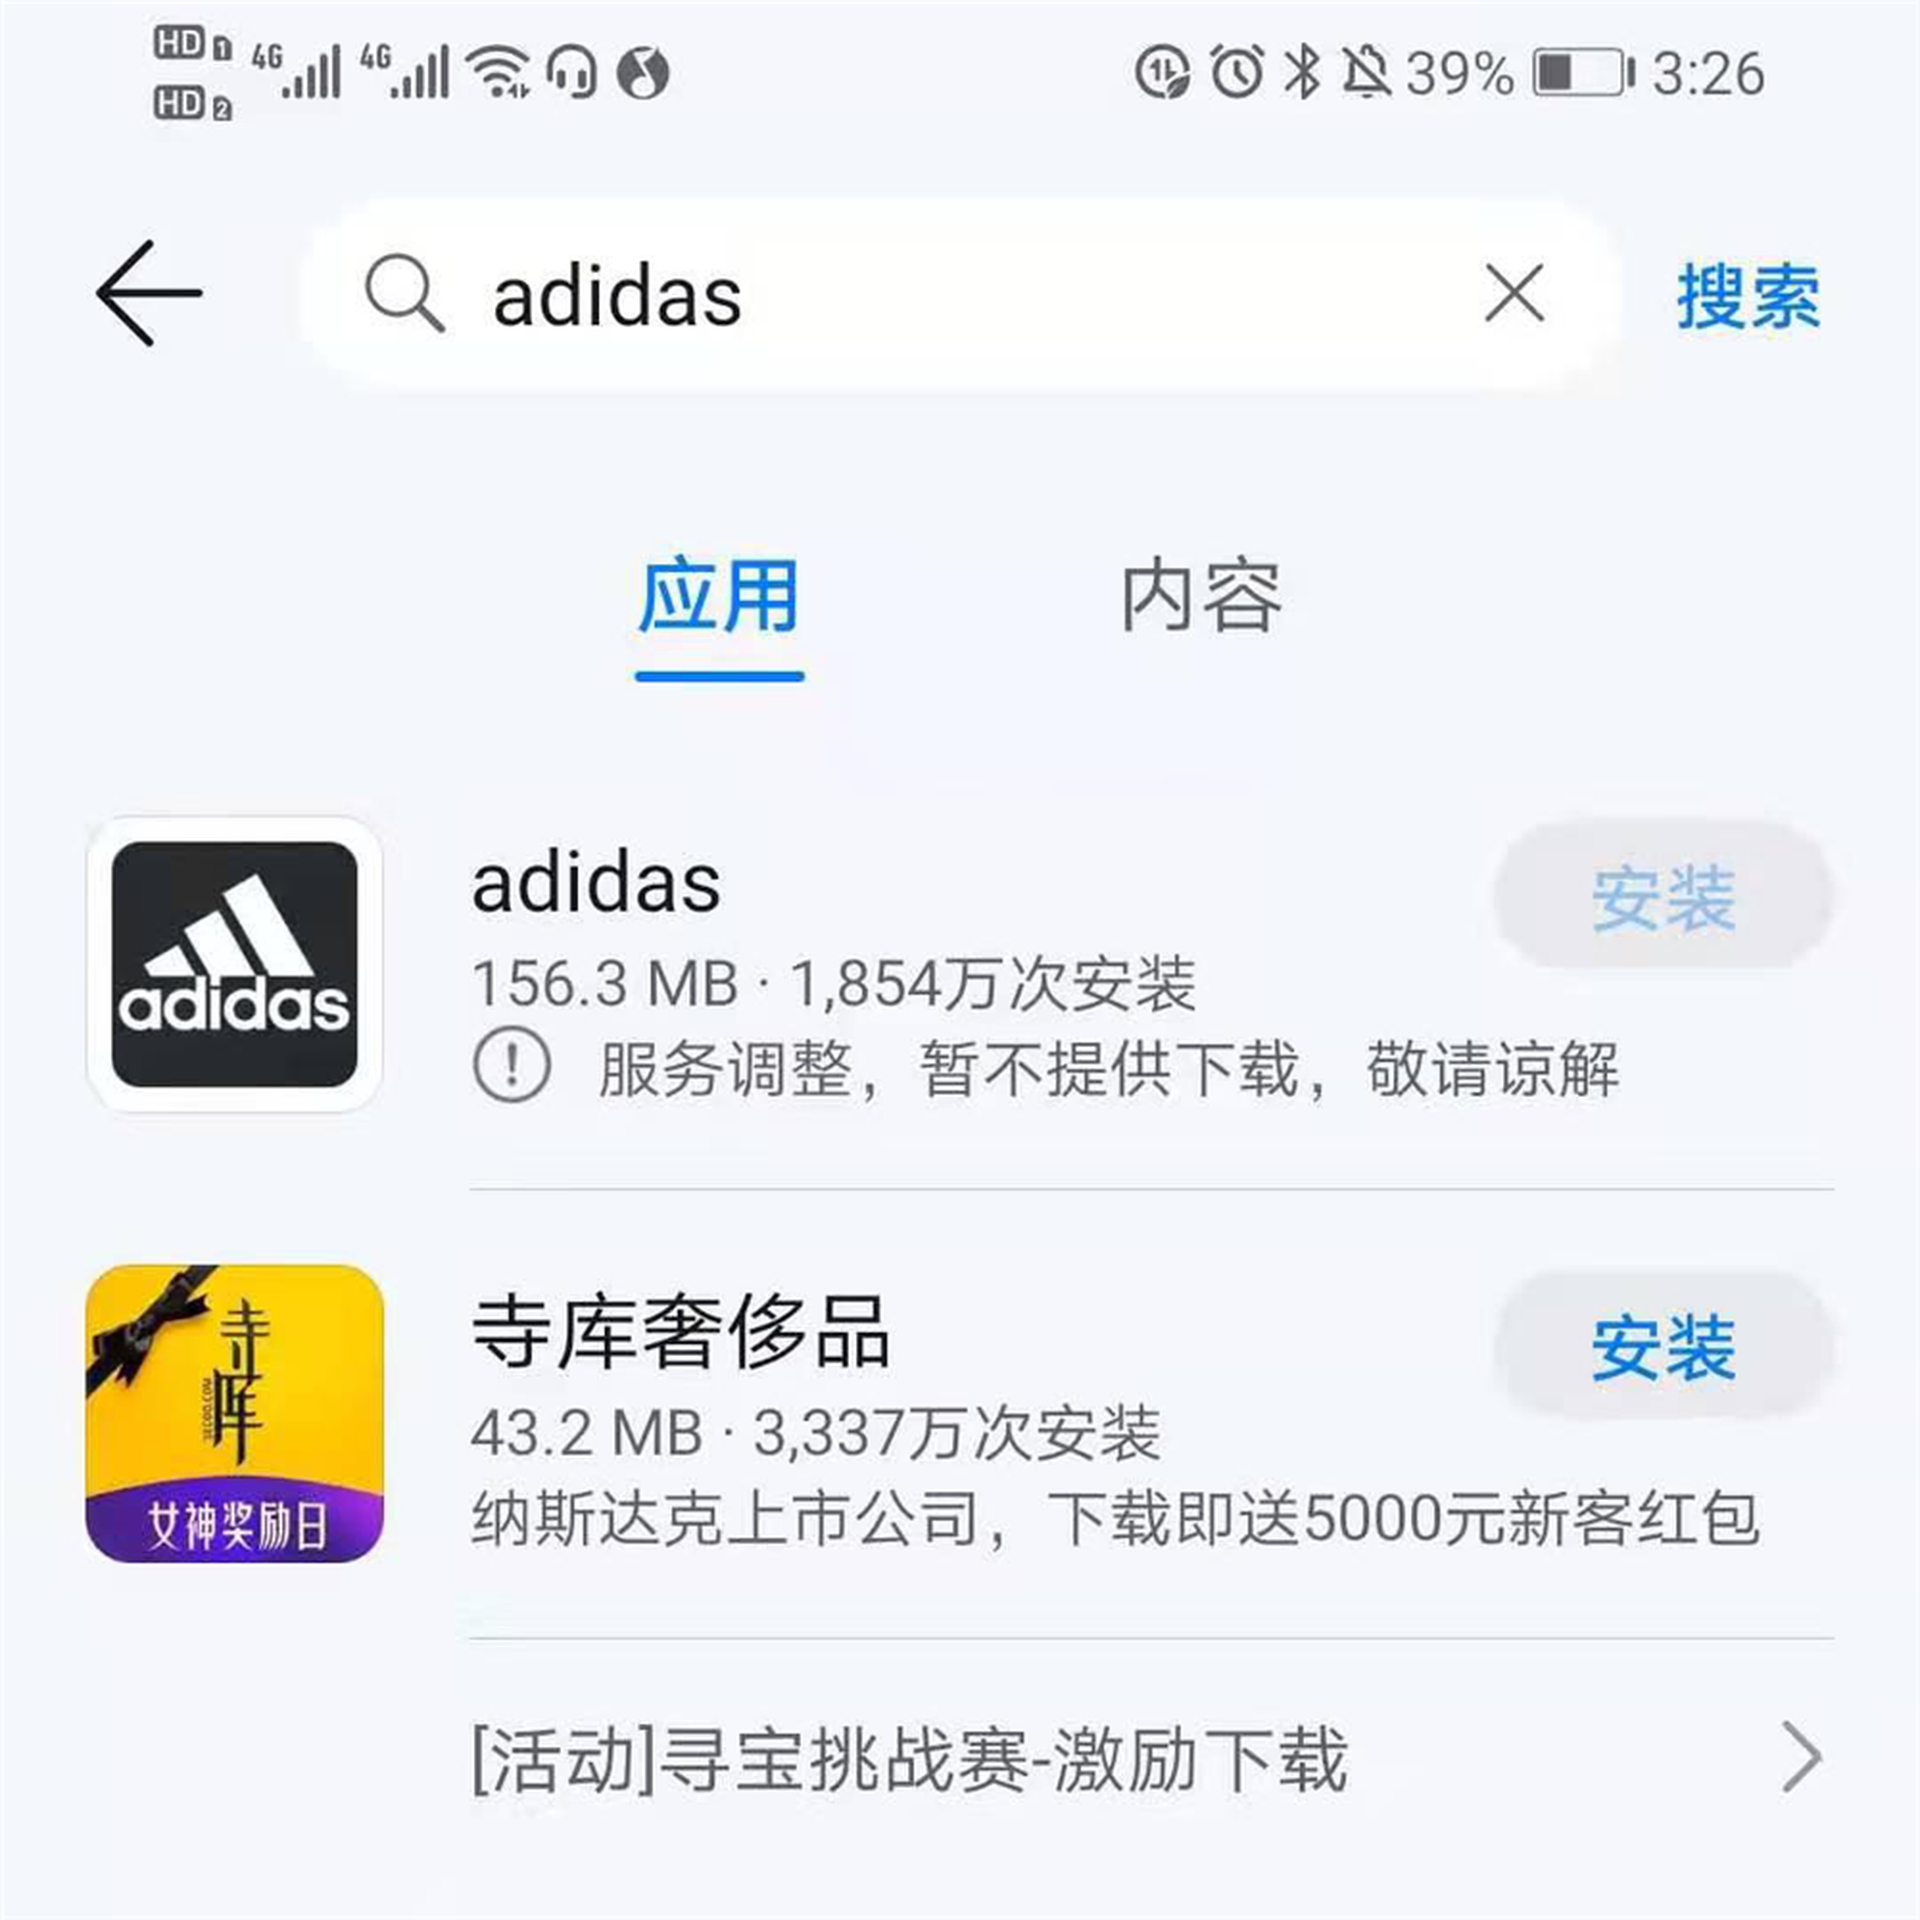 耐克等app遭中国手机商集中下架最新广告语被批挑衅 图 多维新闻 中国